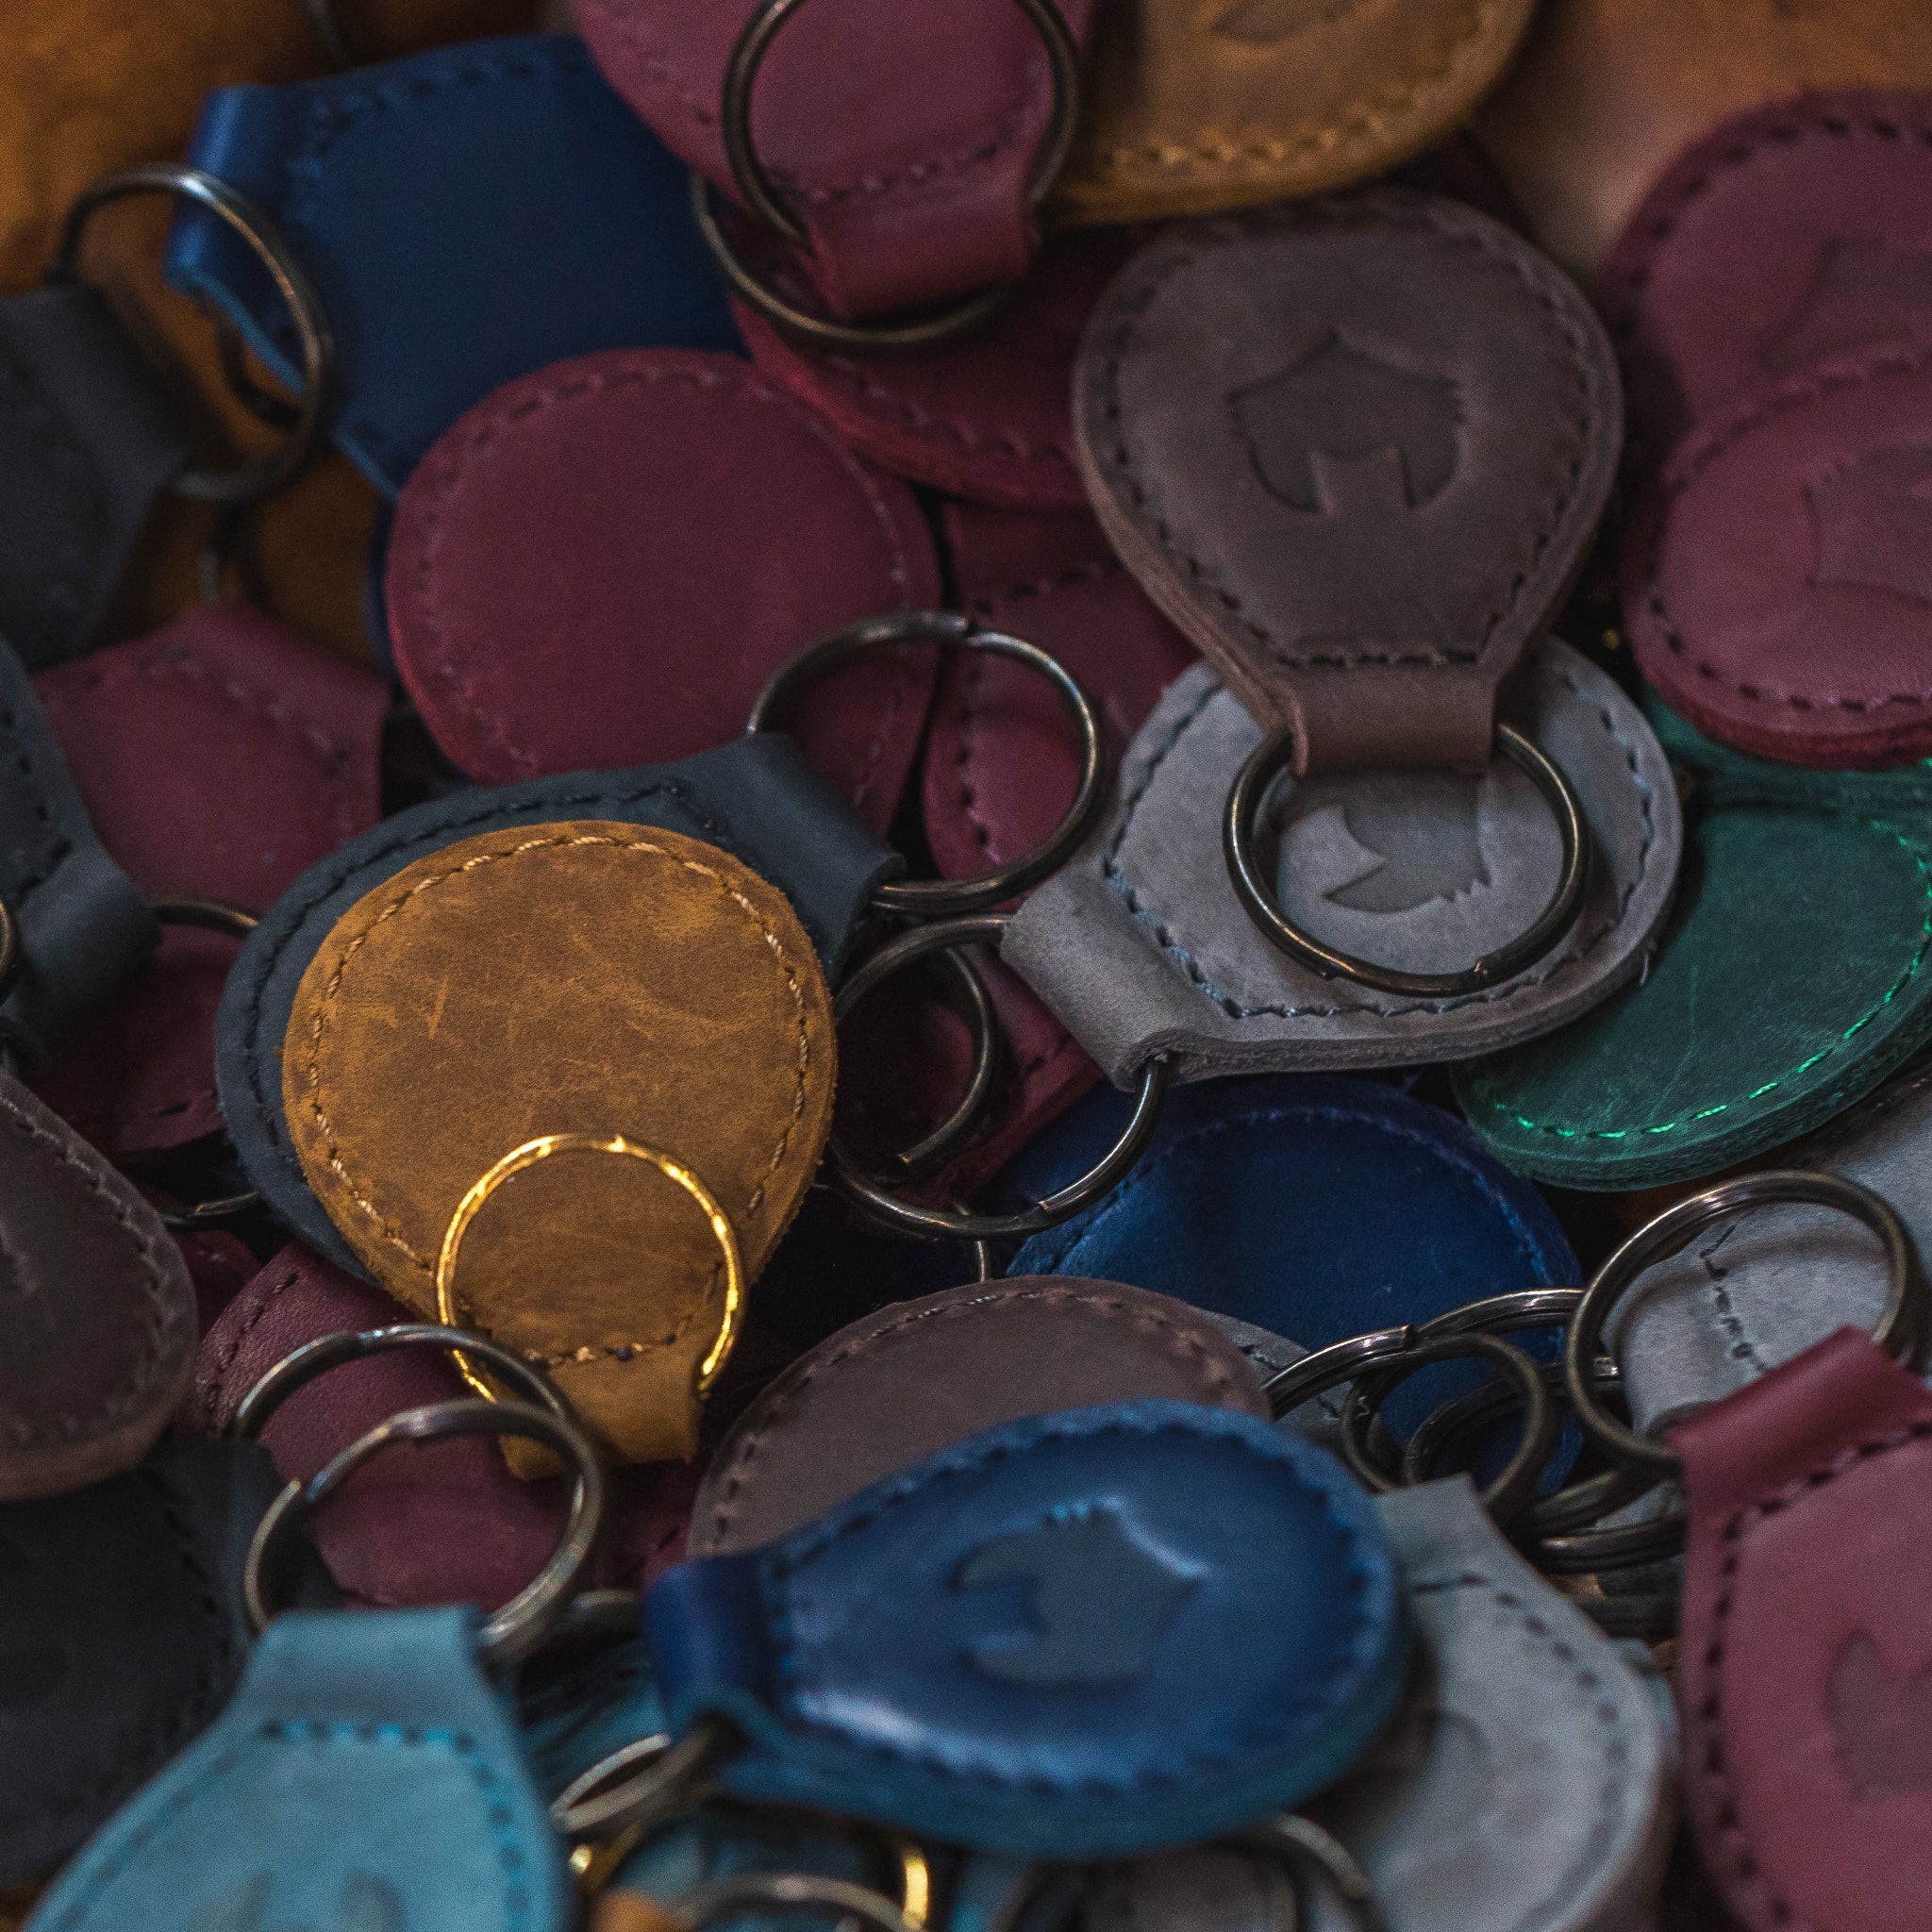 Keychain | Mr Fox | Premium Leather Accessories